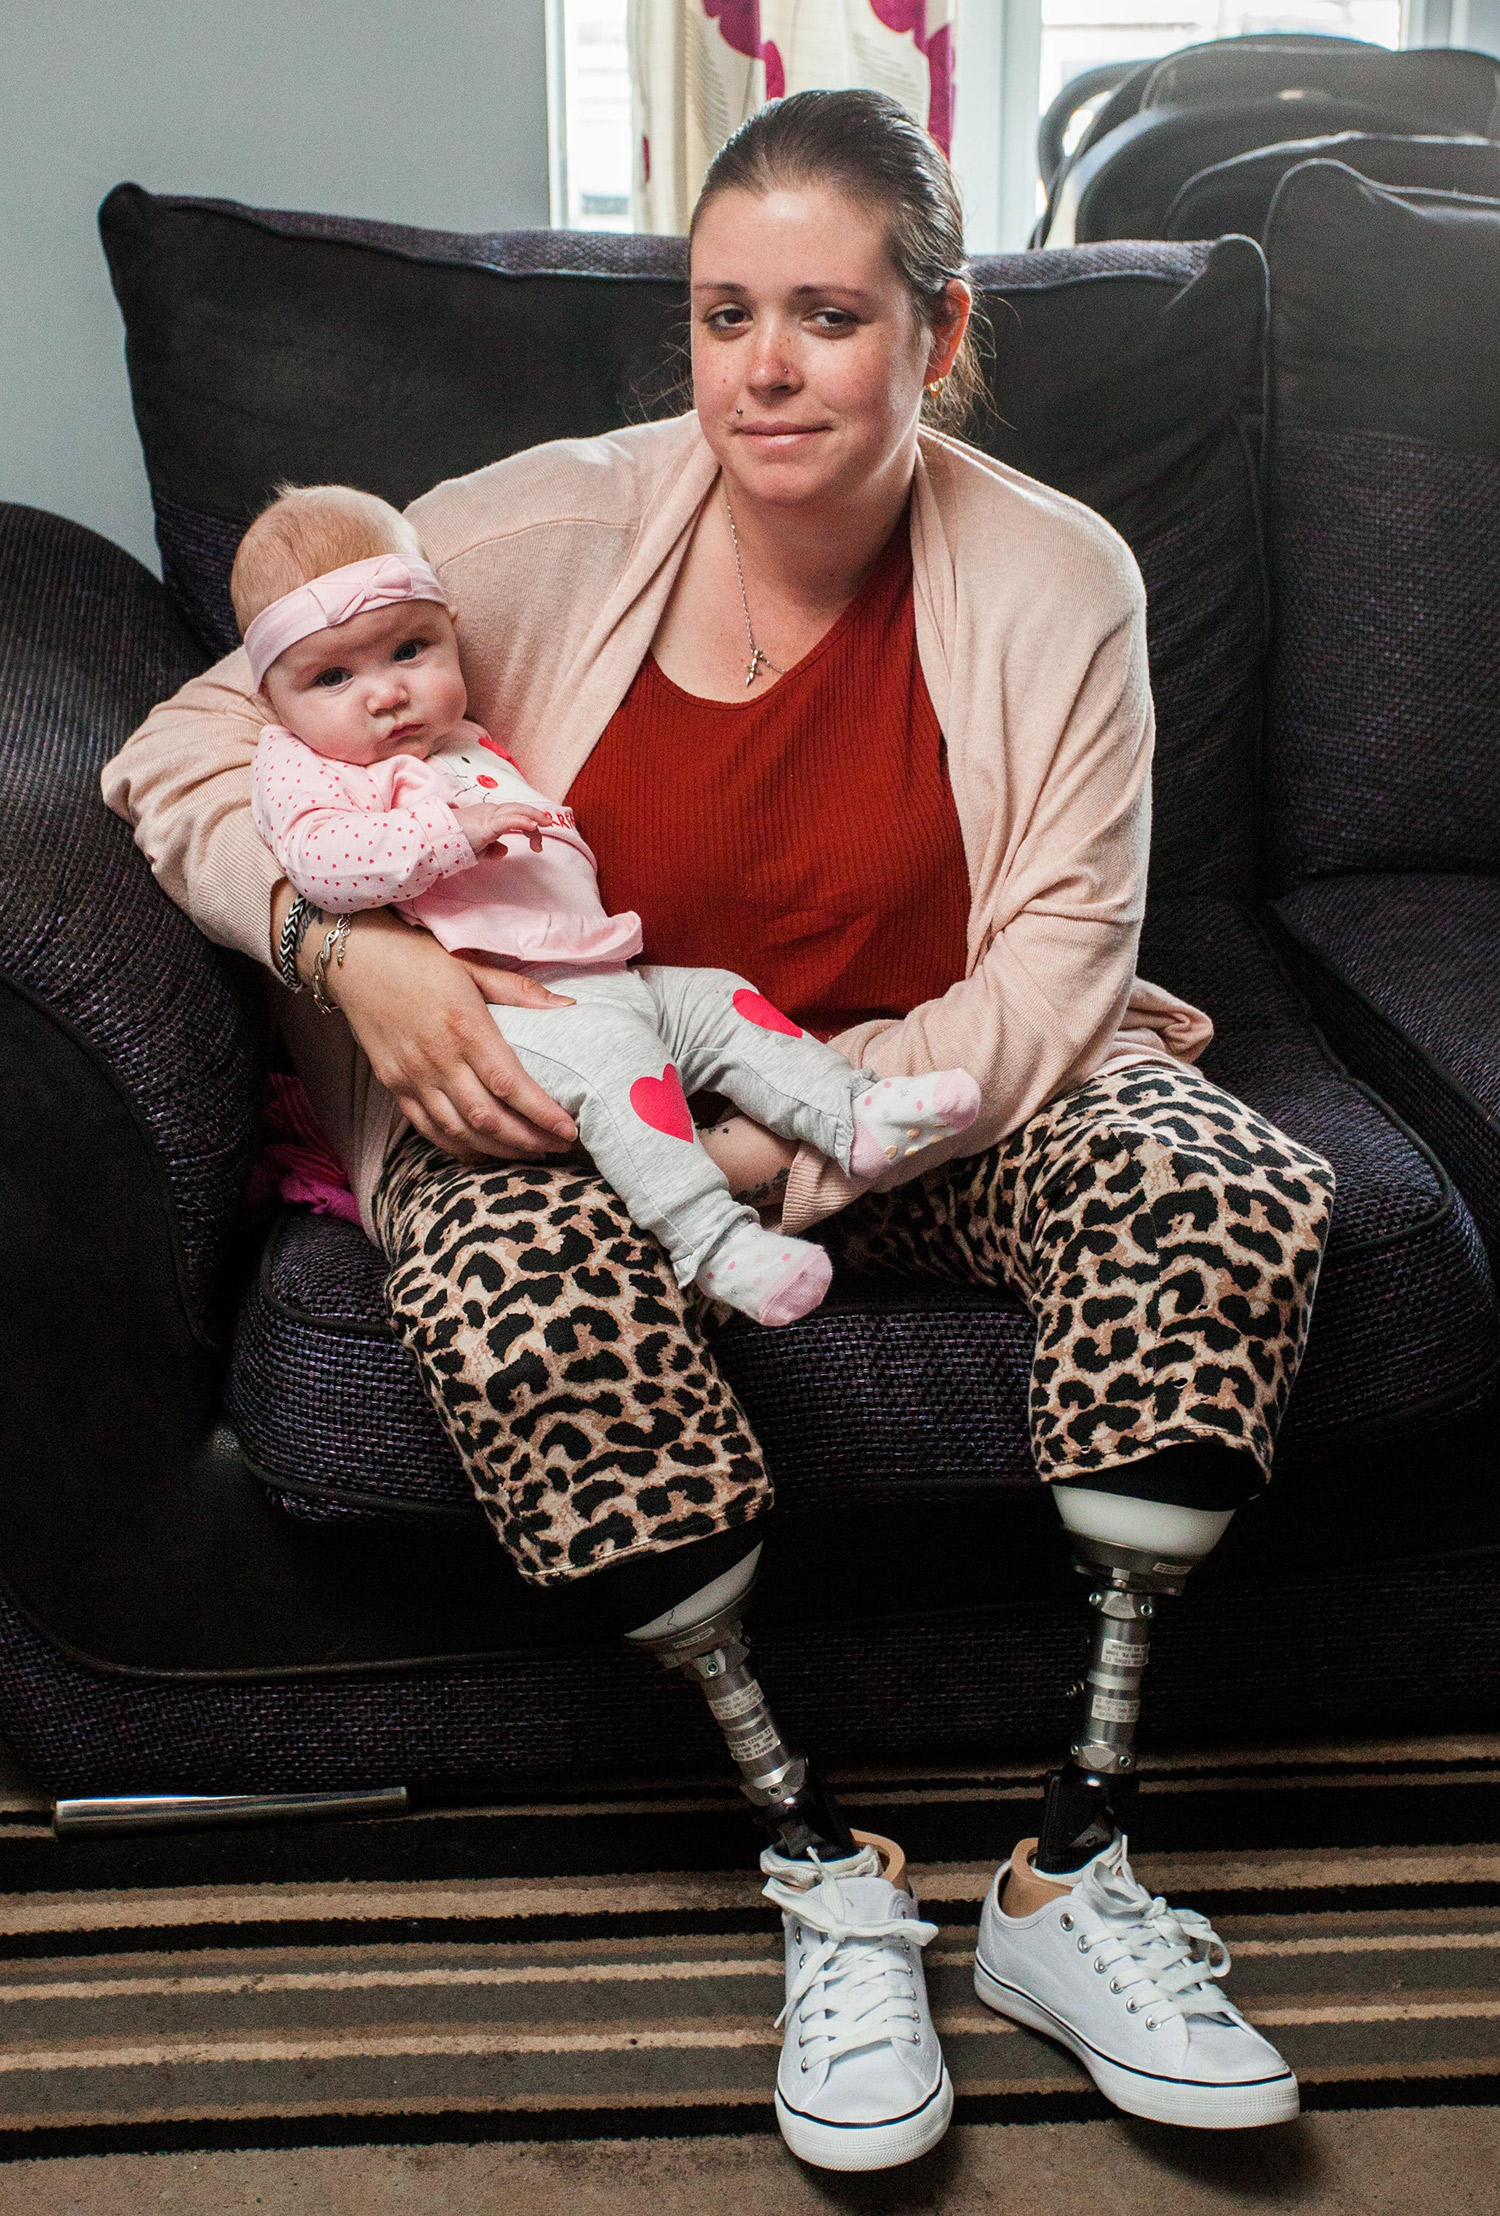 Azért ment kórházba, hogy megszülje nyolcadik gyermekét - lábak nélkül ébredt fel